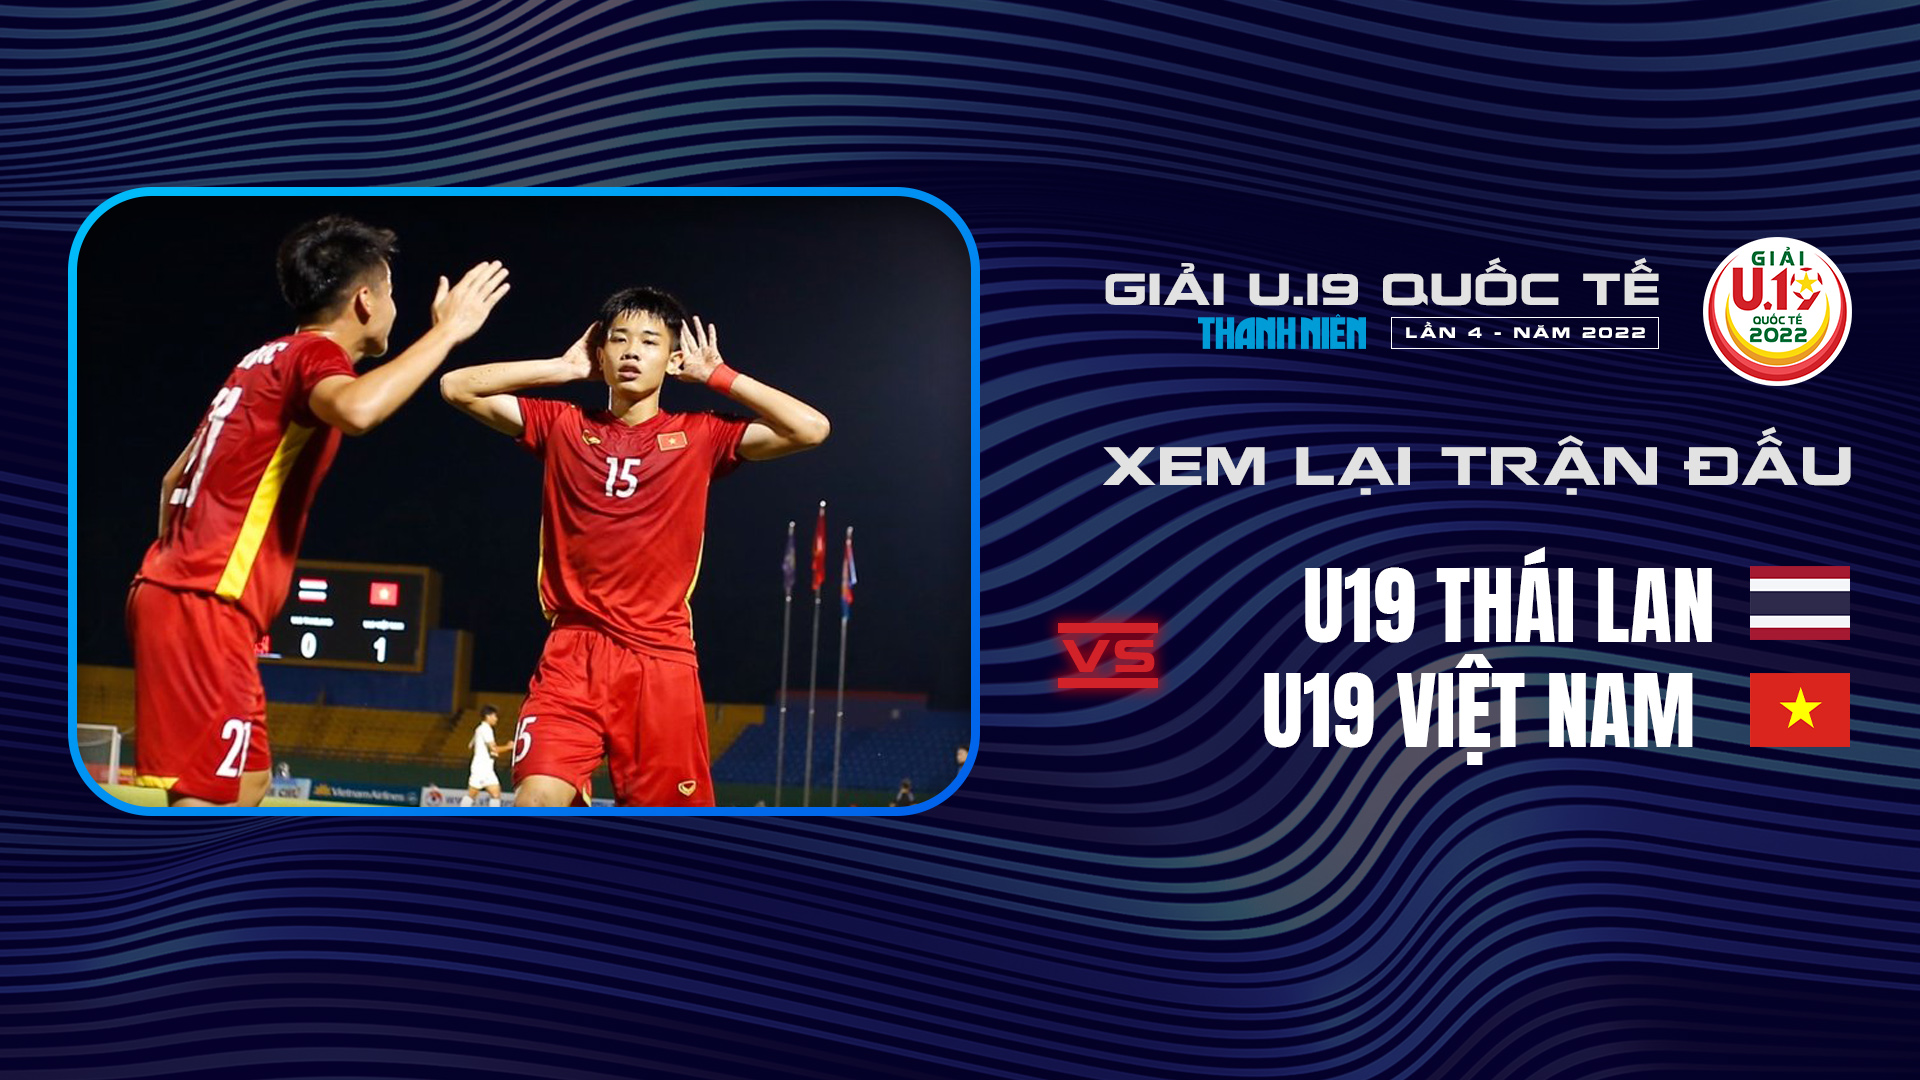 U19 Thái Lan - U19 Việt Nam - U19 Thailand - U19 Vietnam